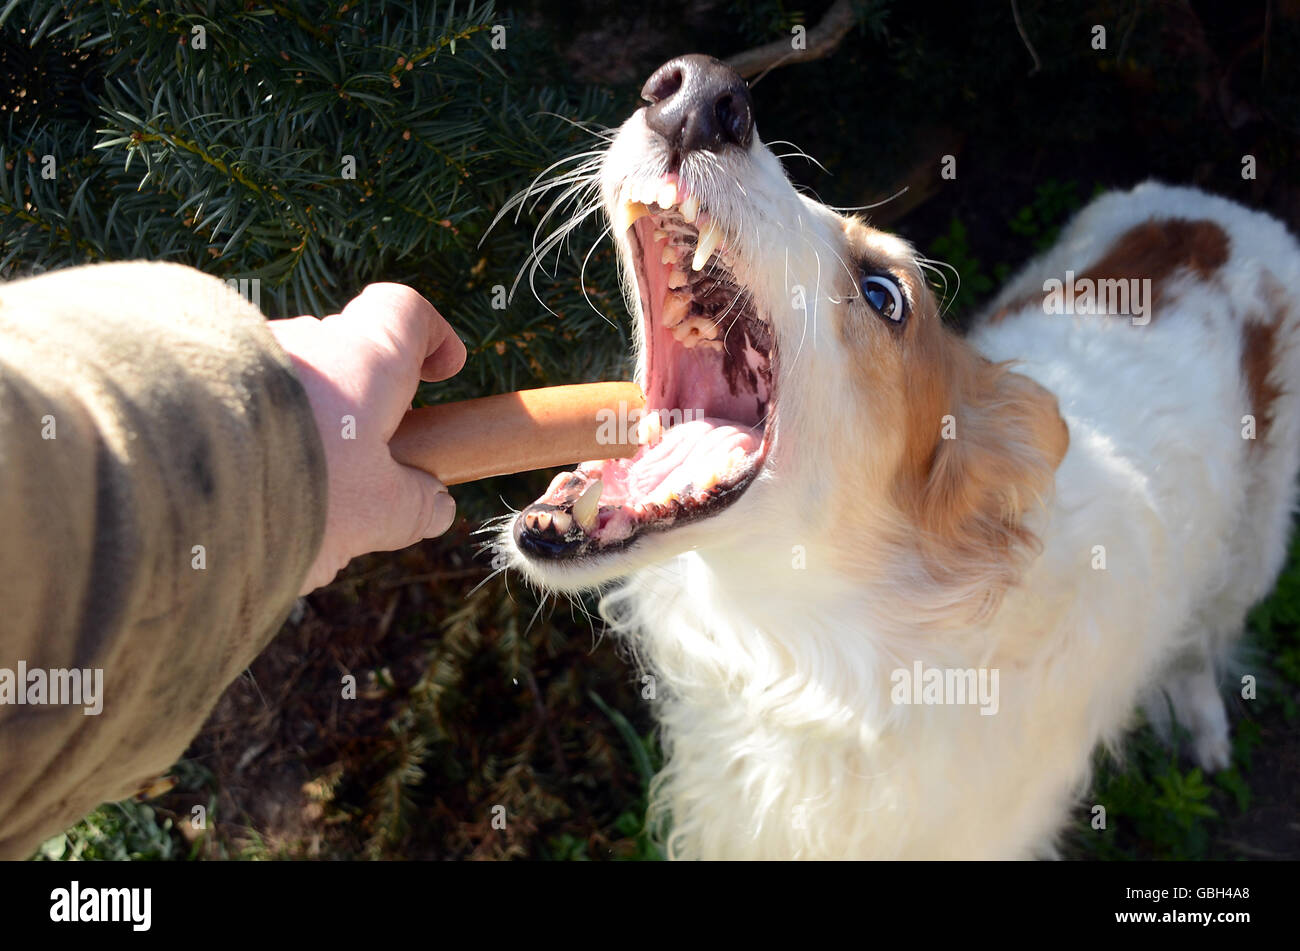 Ein Barsoi Hund bekommt ein Stück Wurst. Sein Mund ist weit offen, der gesamte Ausdruck Freude zeigt Stockfoto